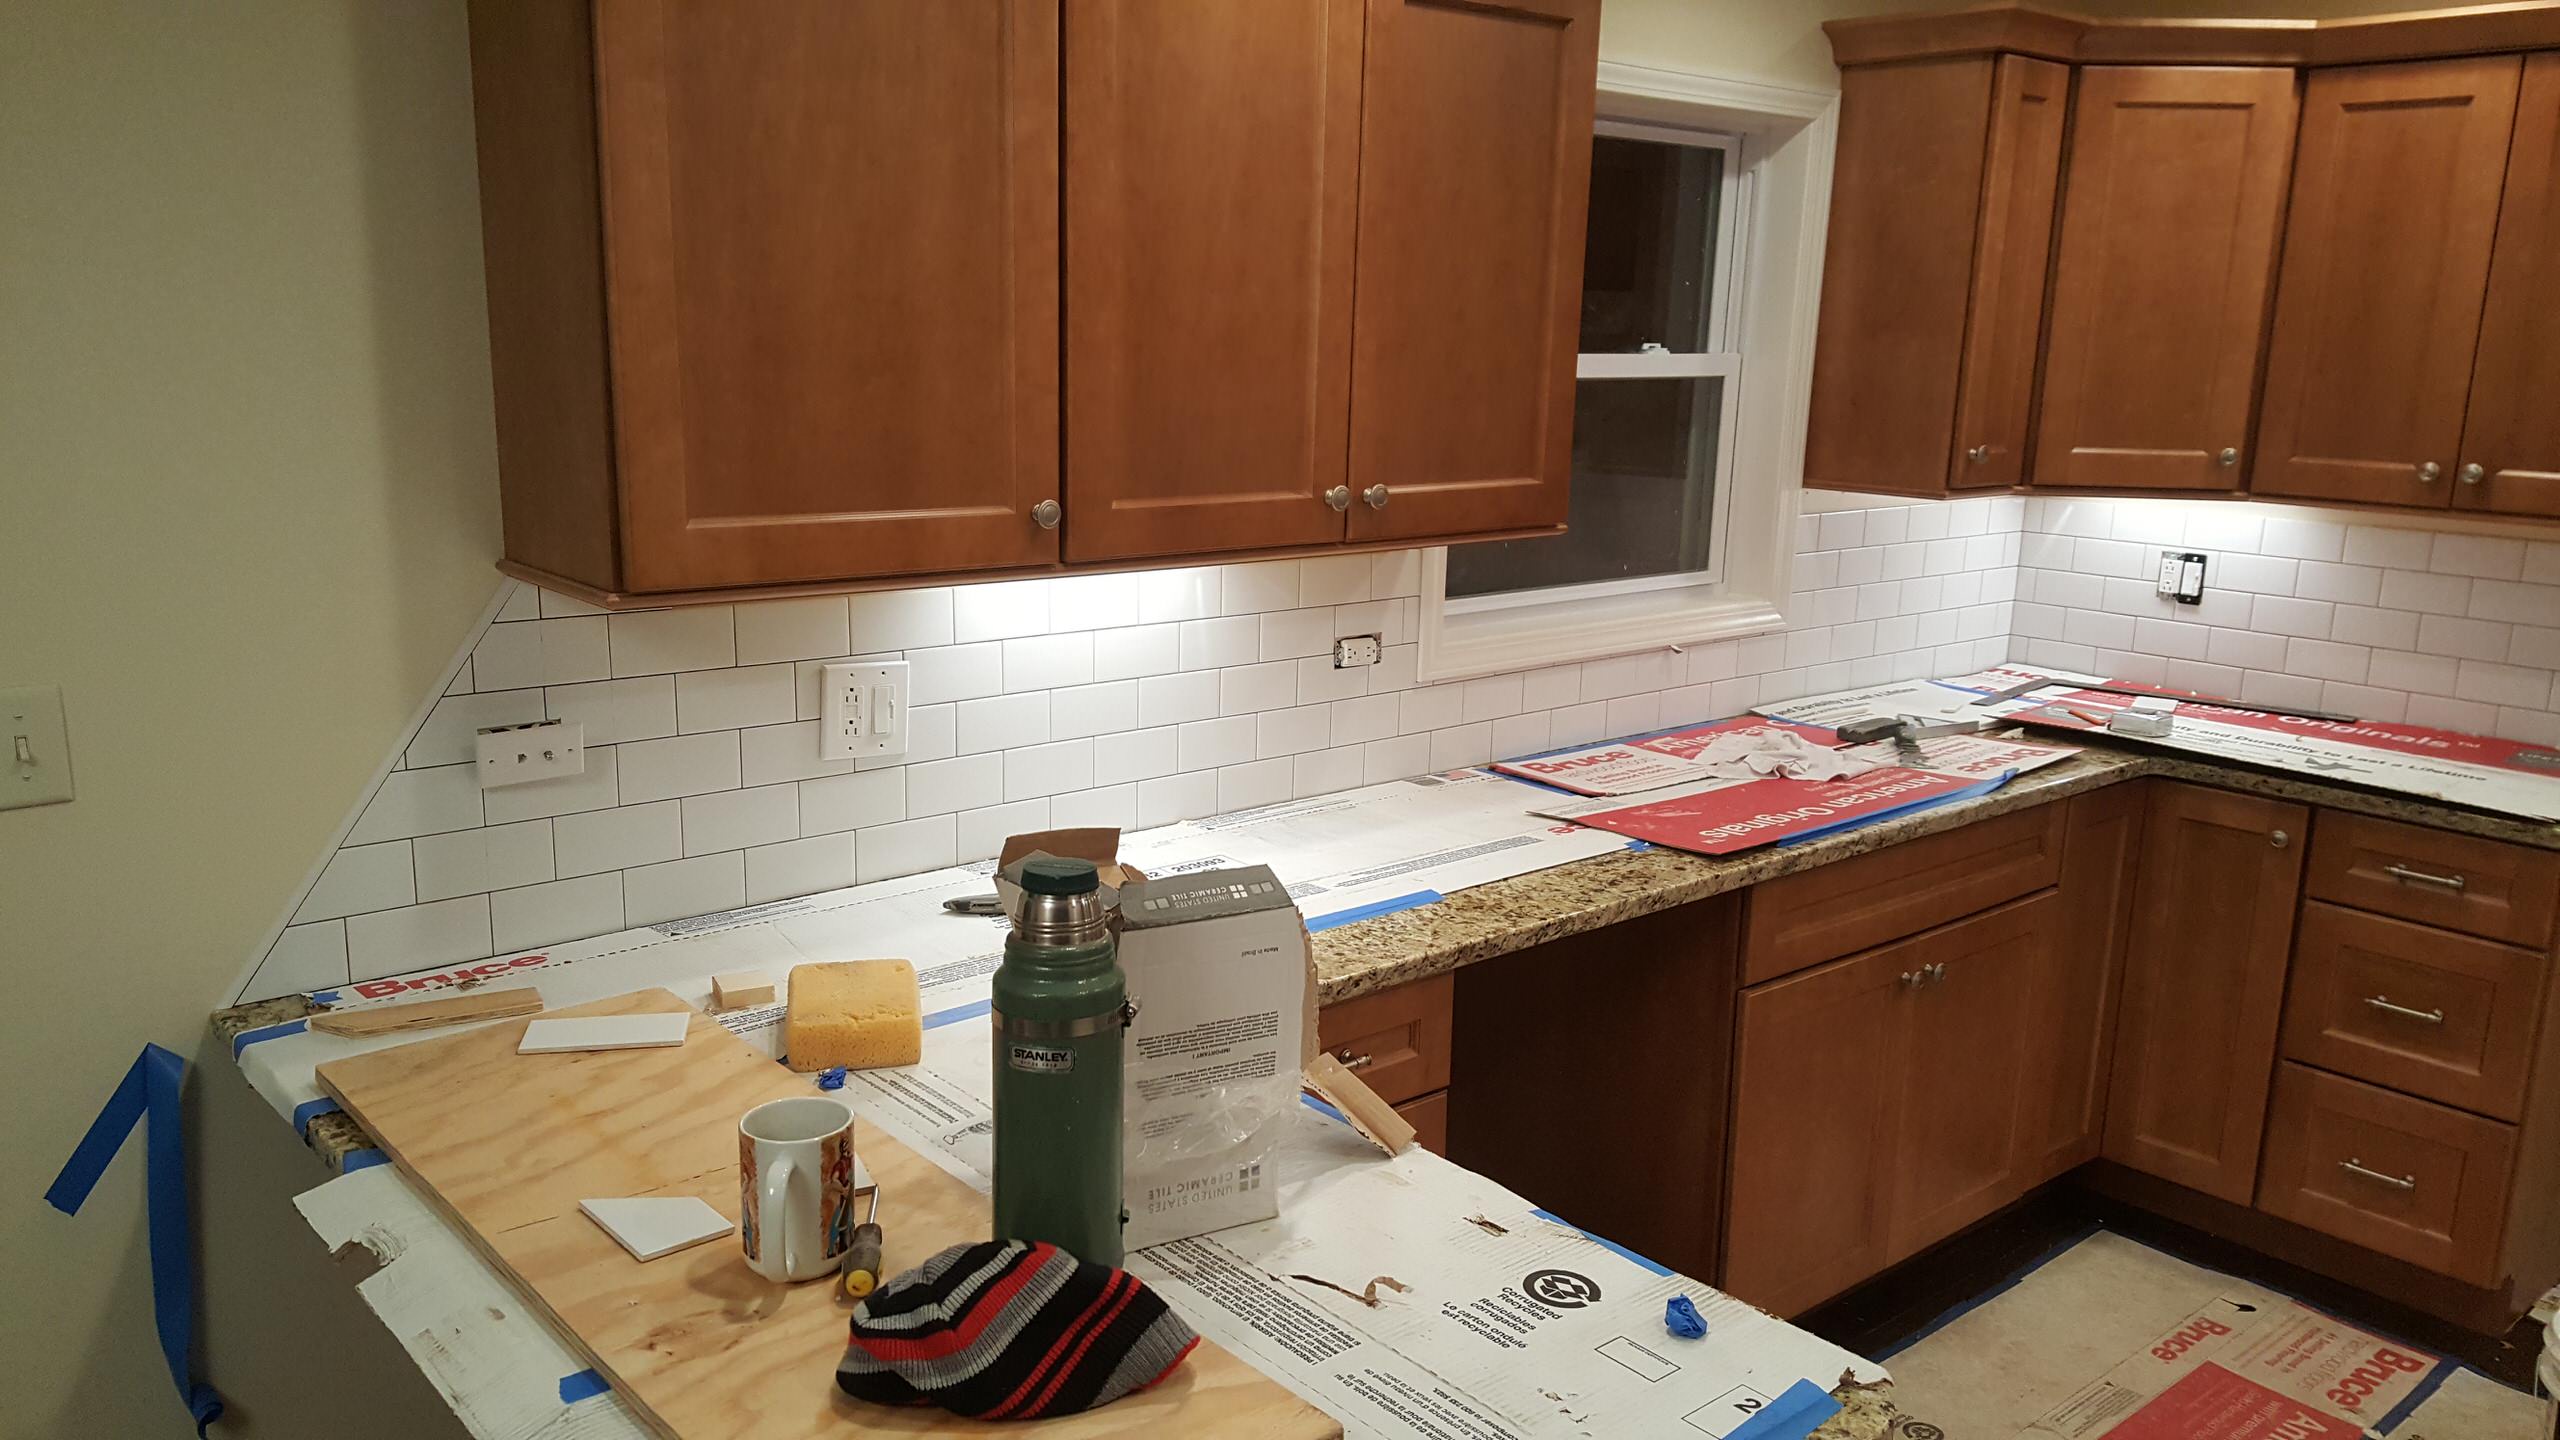 Installing a subway tile backsplash in a new kitchen